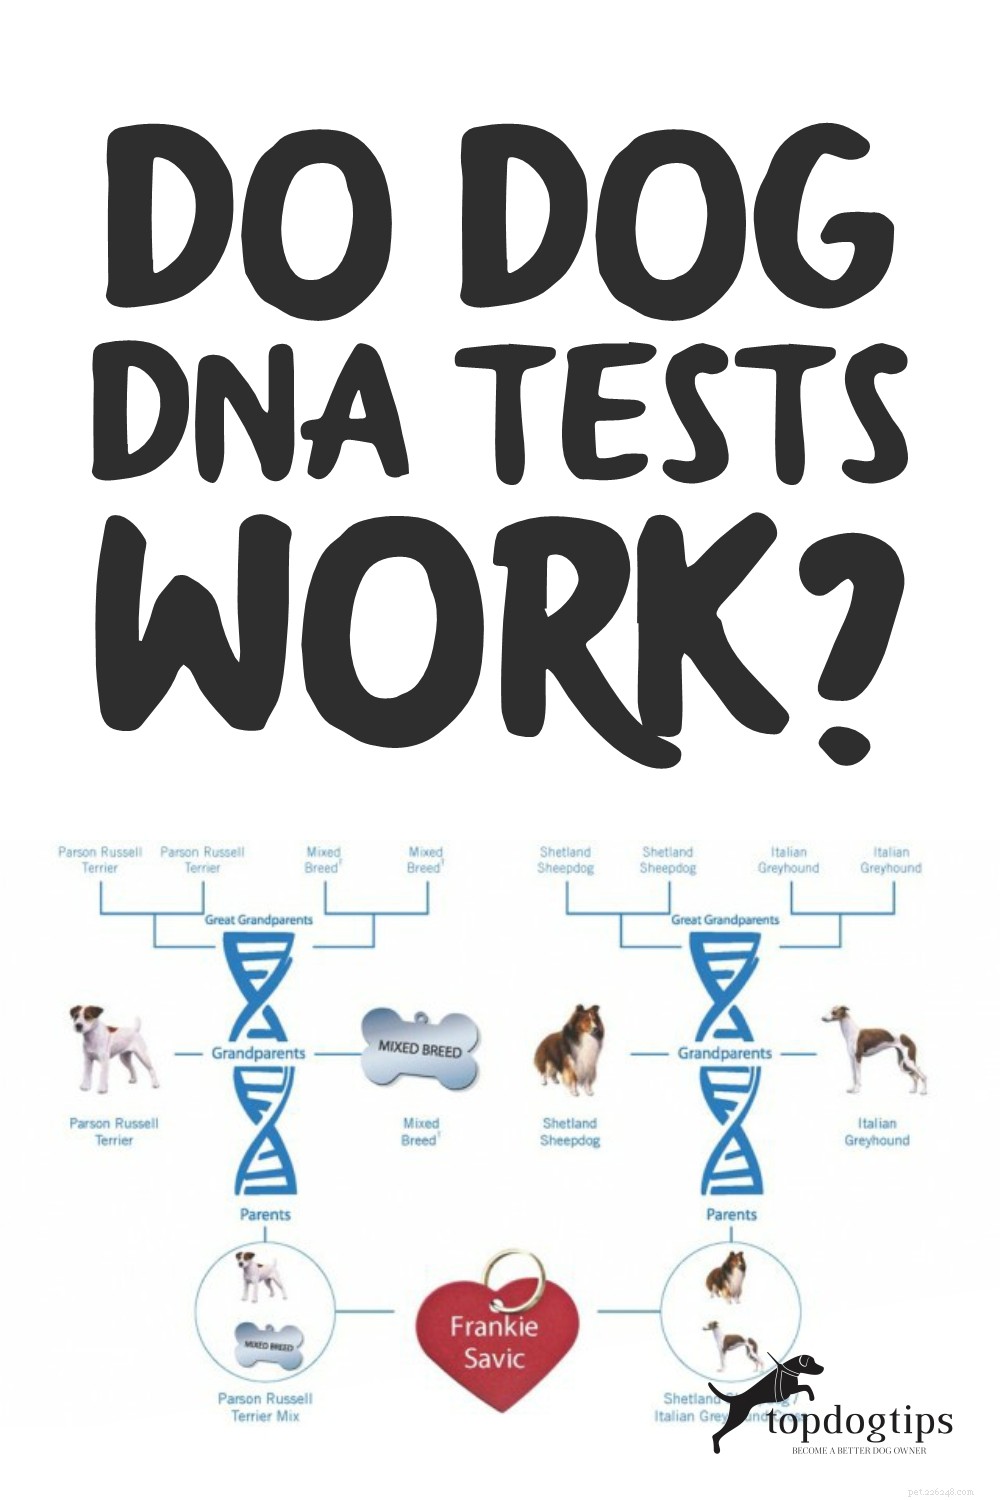 Werken DNA-tests bij honden? Hoe nauwkeurig zijn ze?